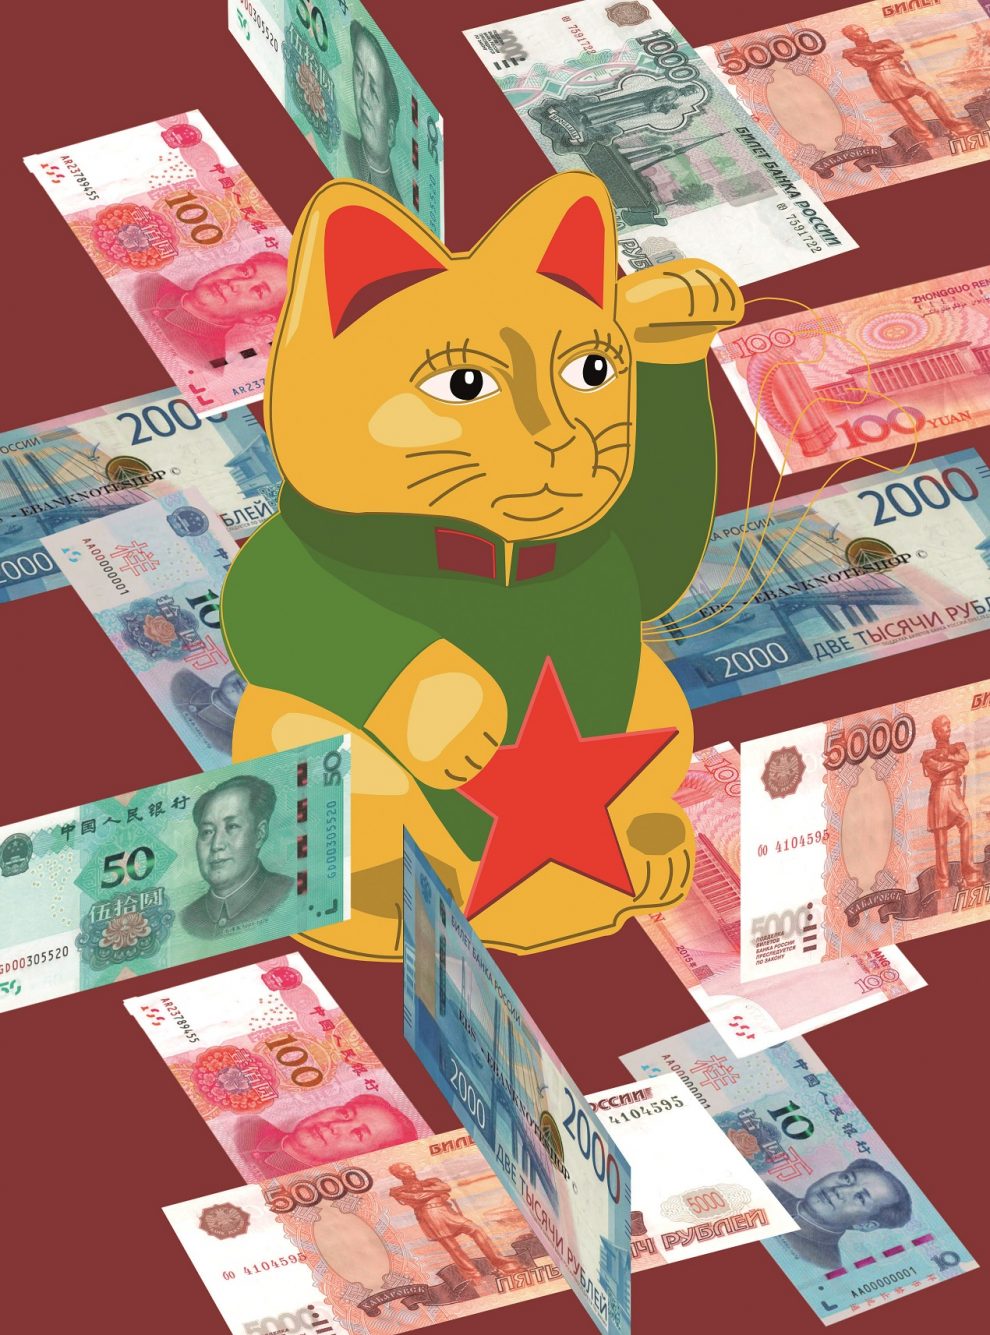 Čína usiluje o nový globální monetární systém